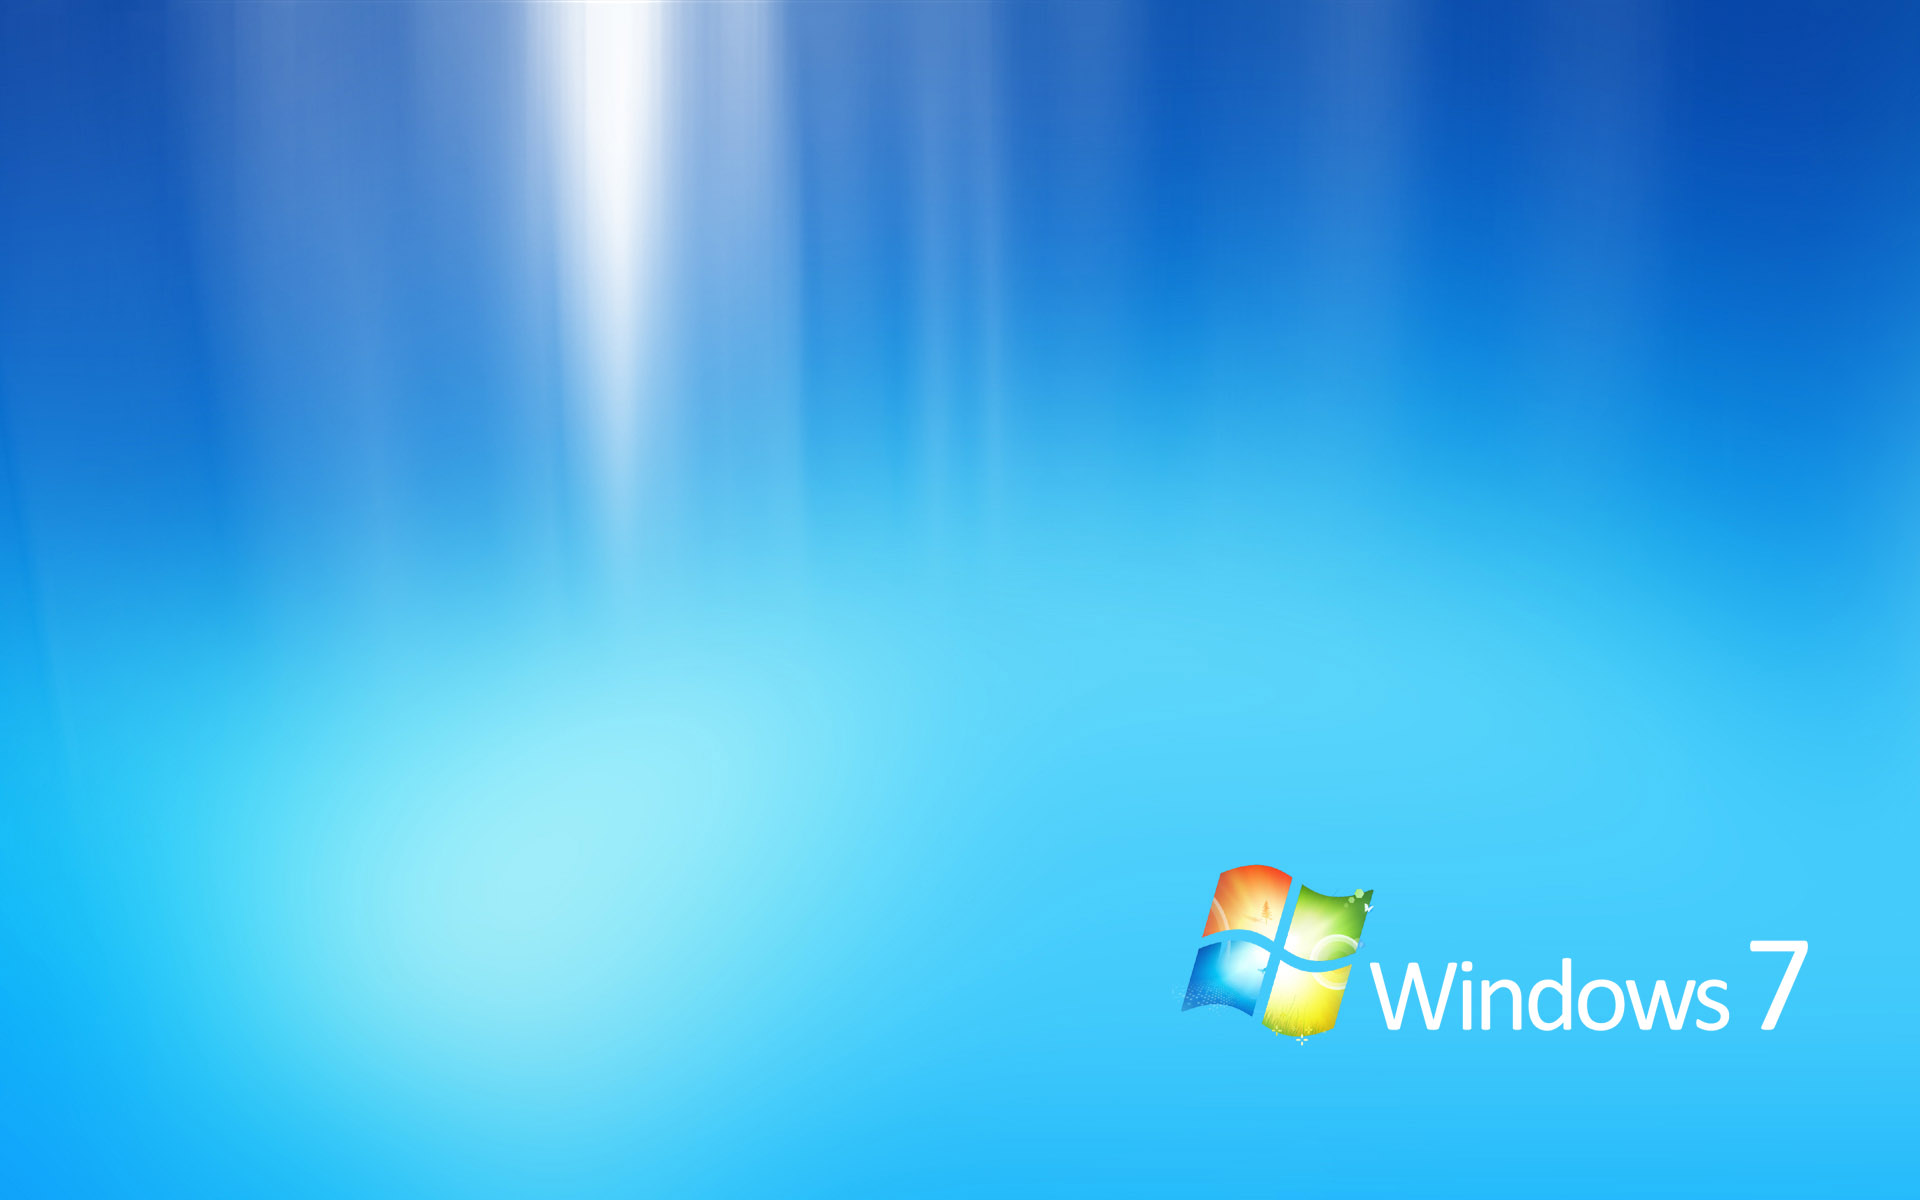 壁纸1920x1200Windows7 5 3壁纸 Windows7壁纸 Windows7图片 Windows7素材 系统壁纸 系统图库 系统图片素材桌面壁纸